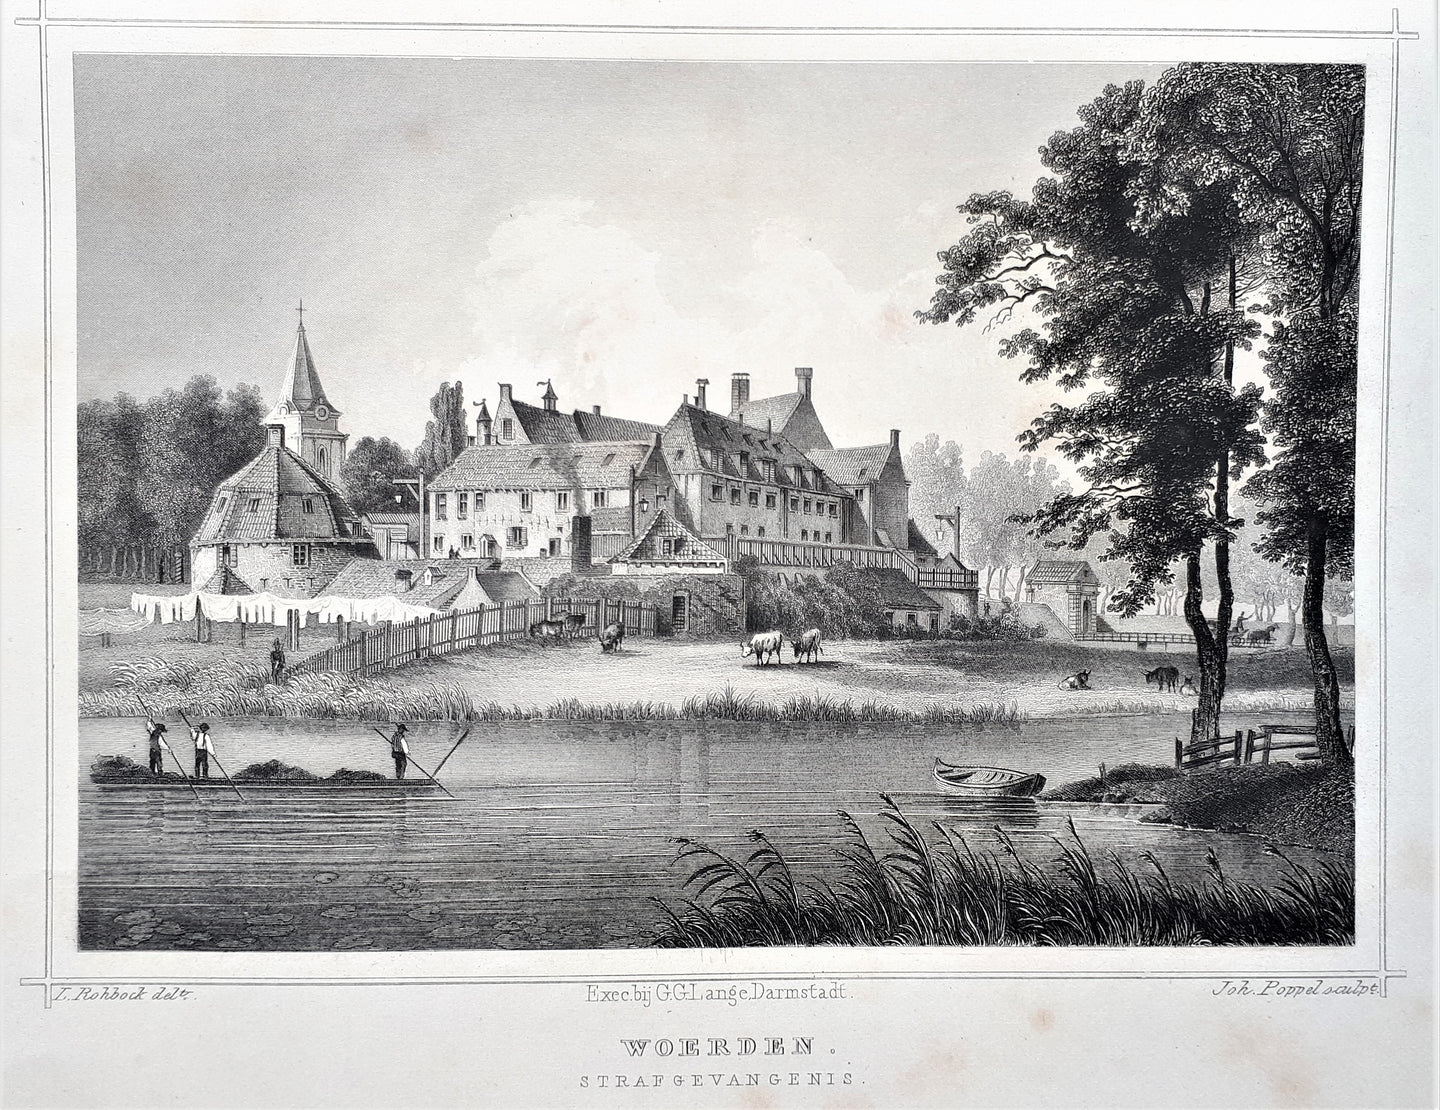 WOERDEN - JL Terwen / GB van Goor - 1858